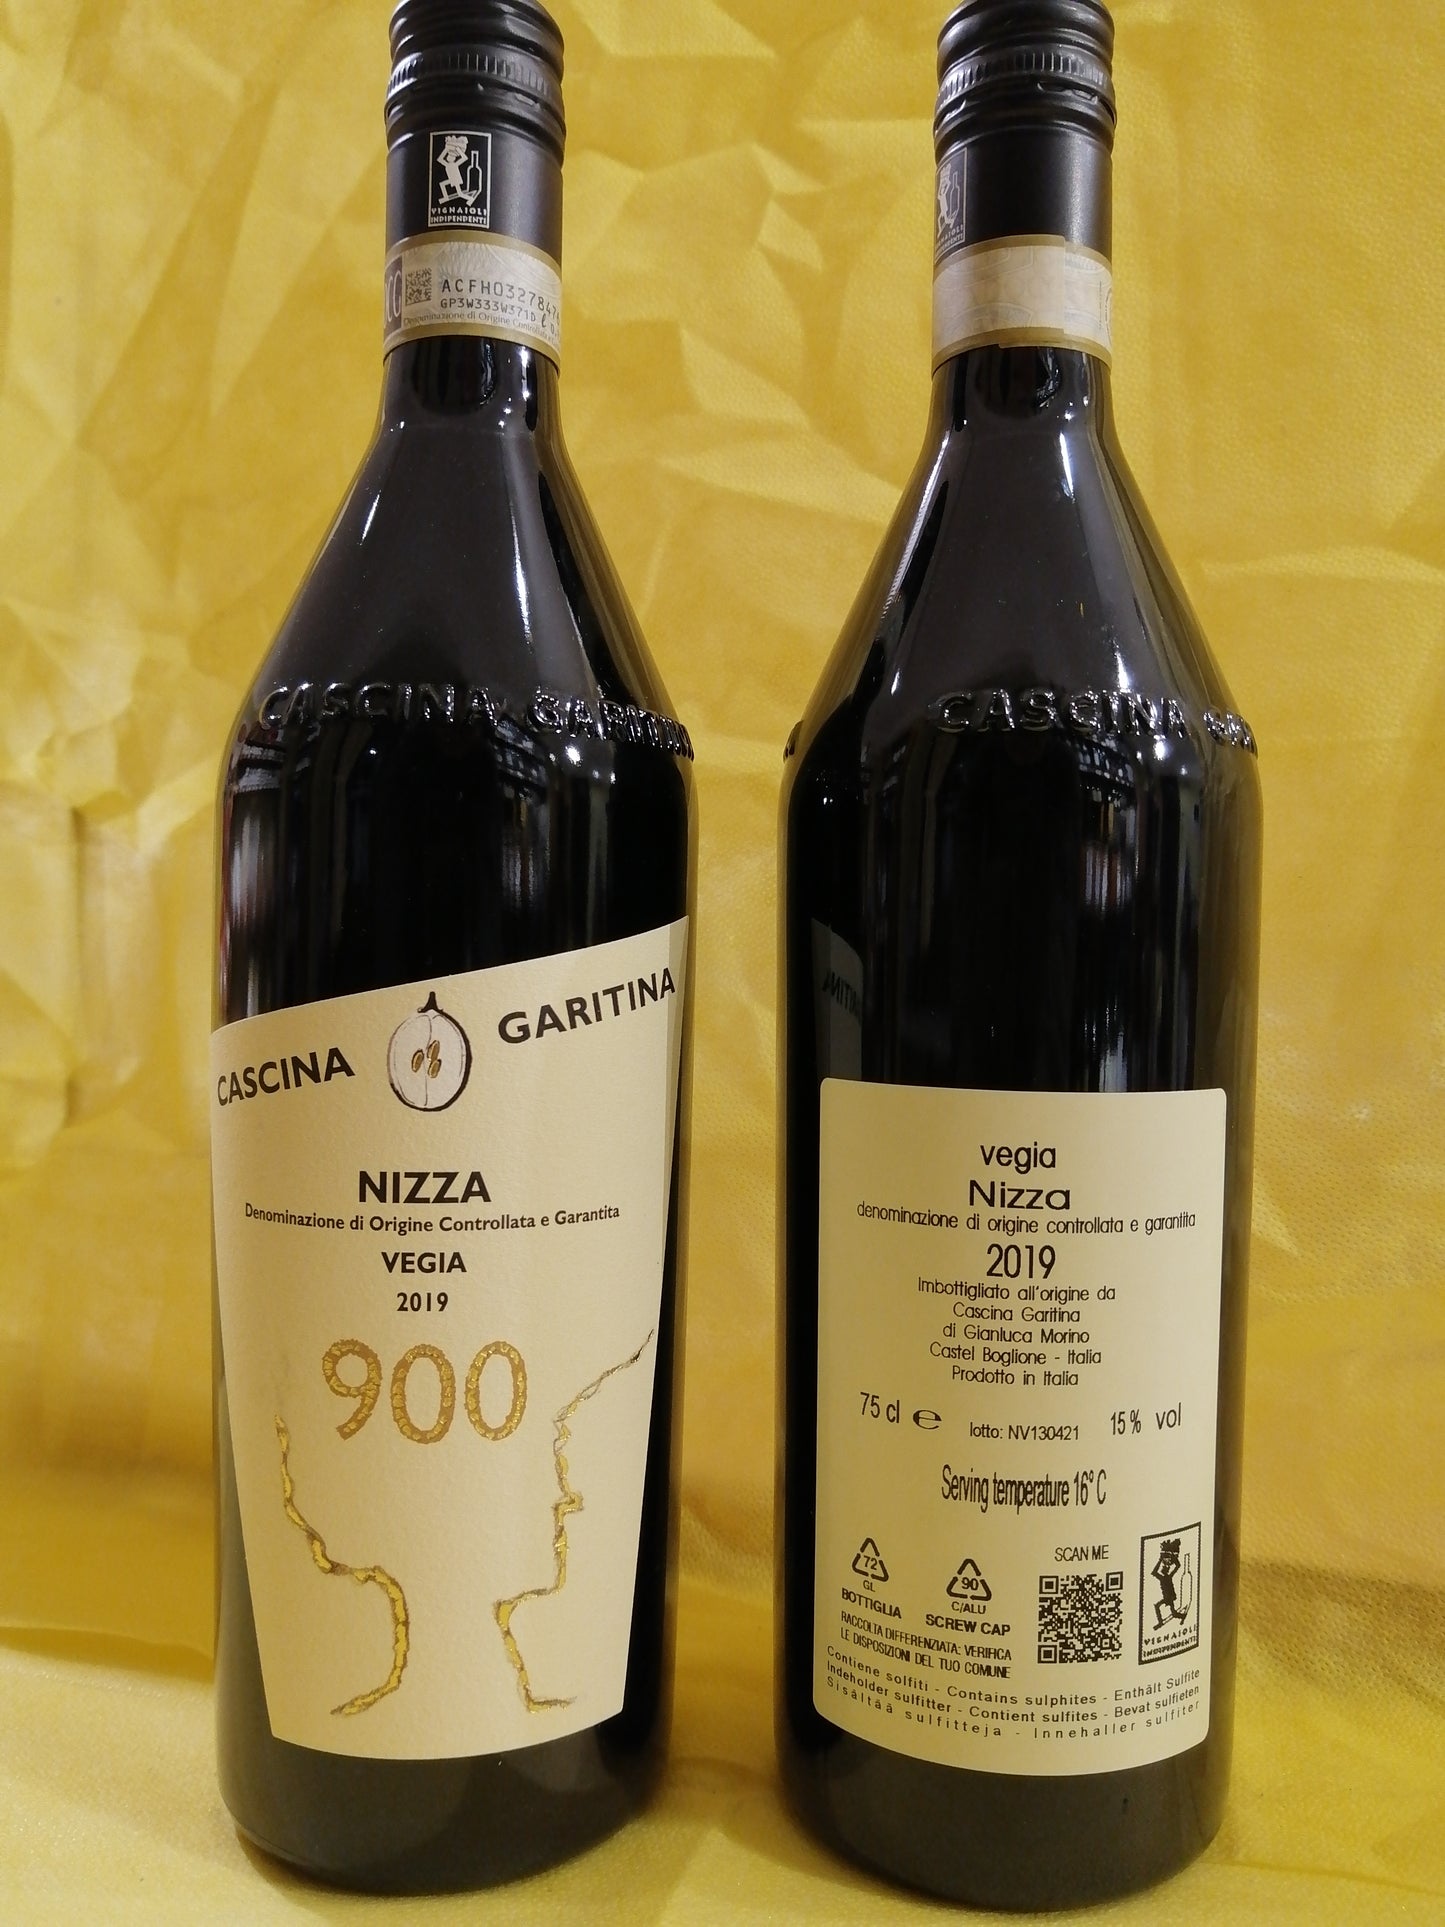 Nizza DOCG "VEGIA" 900 - Cascina Garitina